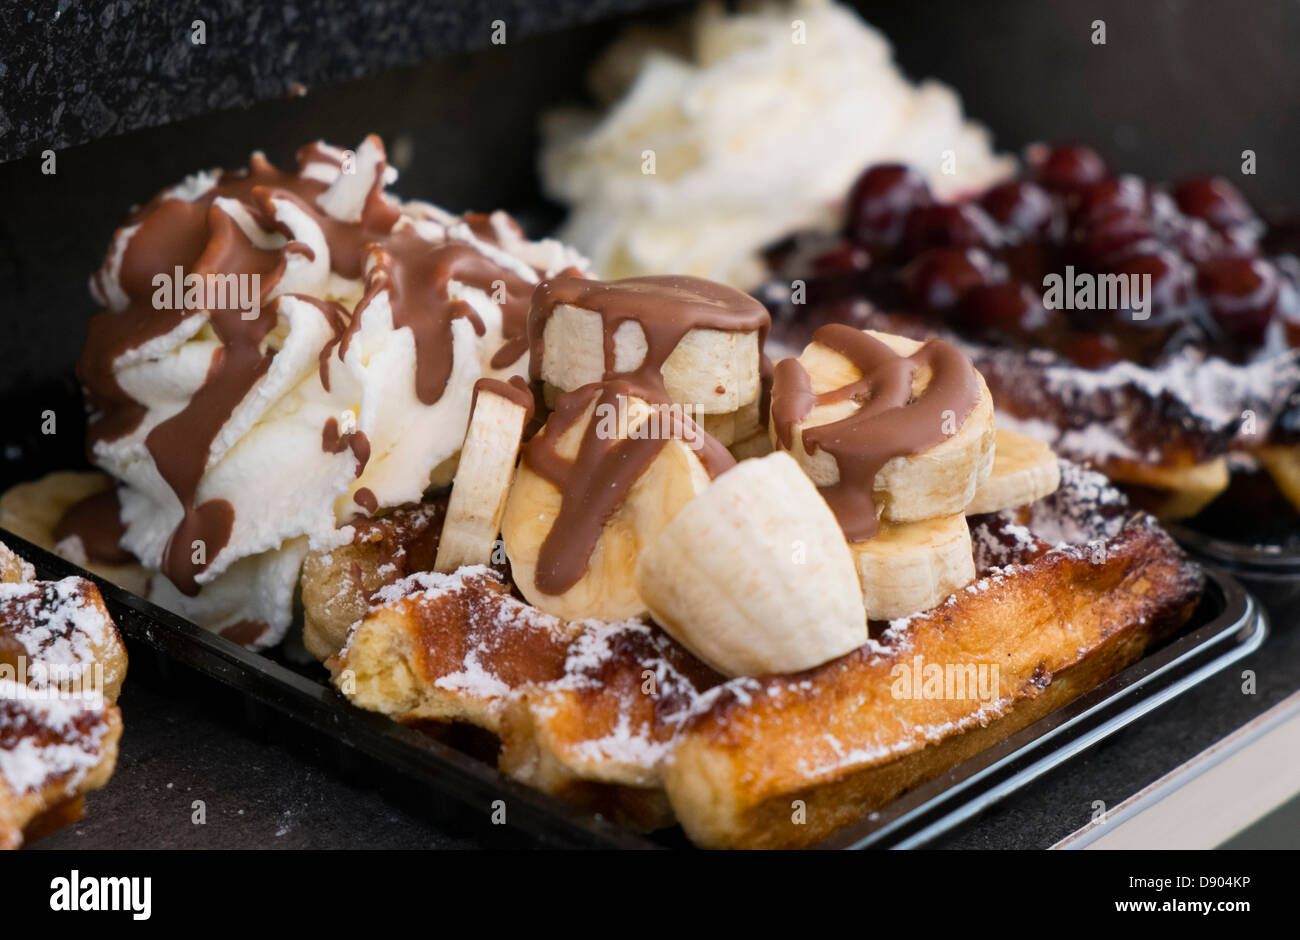 Países Bajos, Volendam, waffle con plátanos, chocolate y crema batida Foto de stock